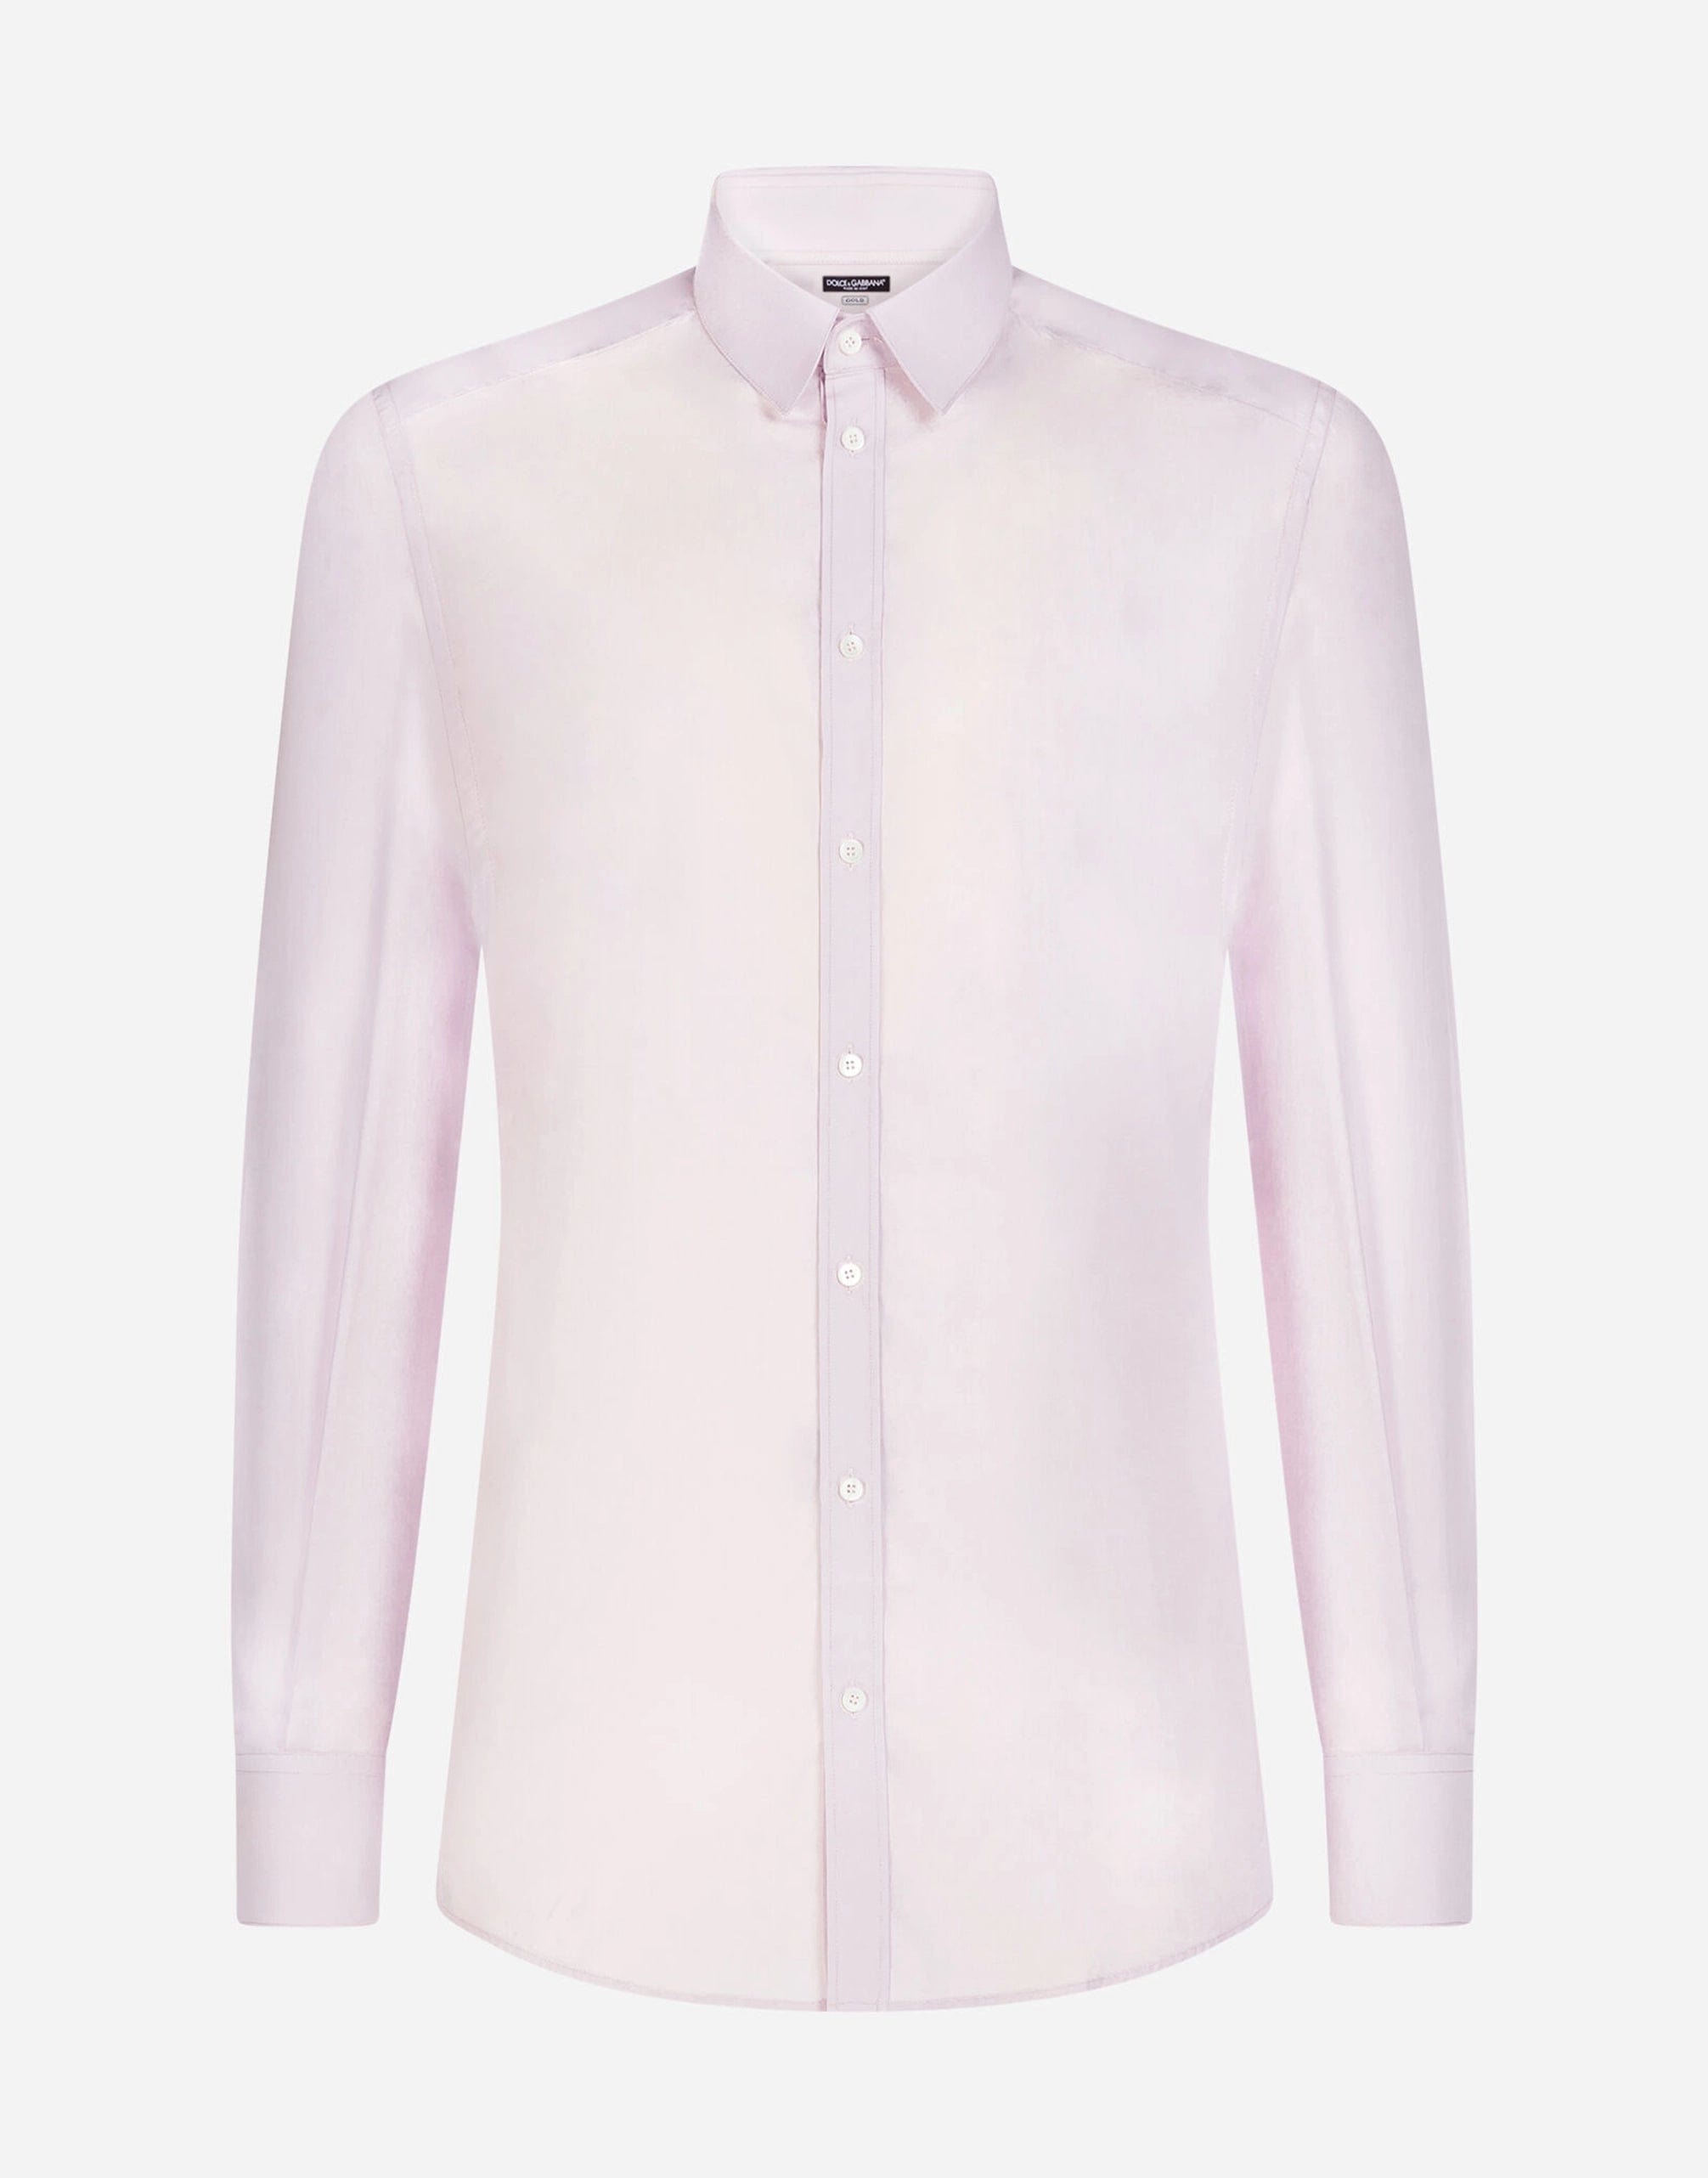 Dolce & Gabbana Light Pink Cotton Formal GOLD Dress Shirt